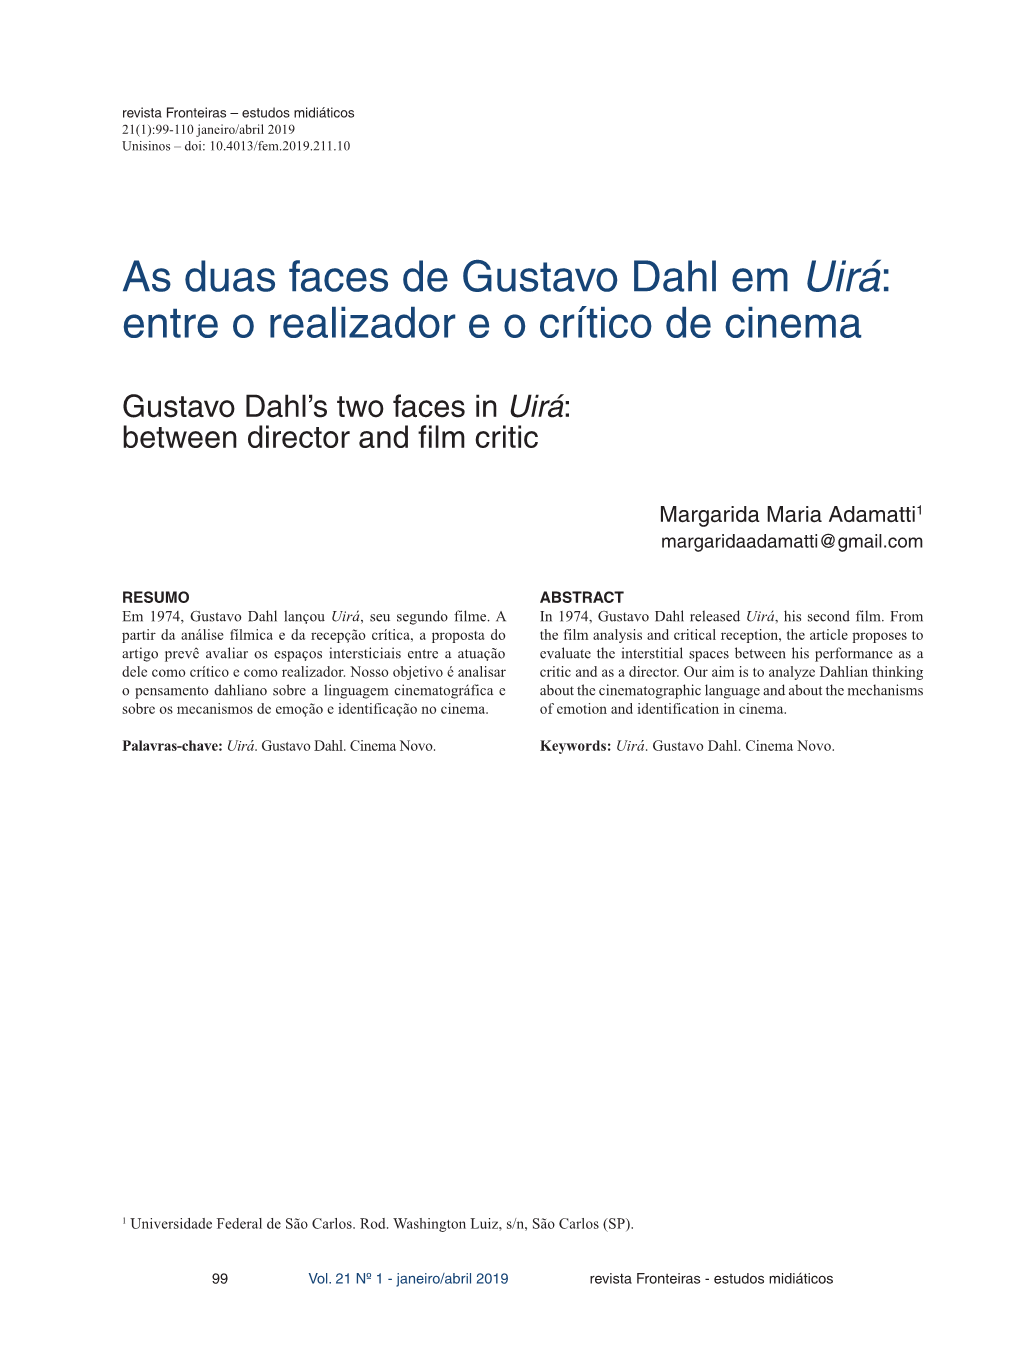 As Duas Faces De Gustavo Dahl Em Uirá: Entre O Realizador E O Crítico De Cinema